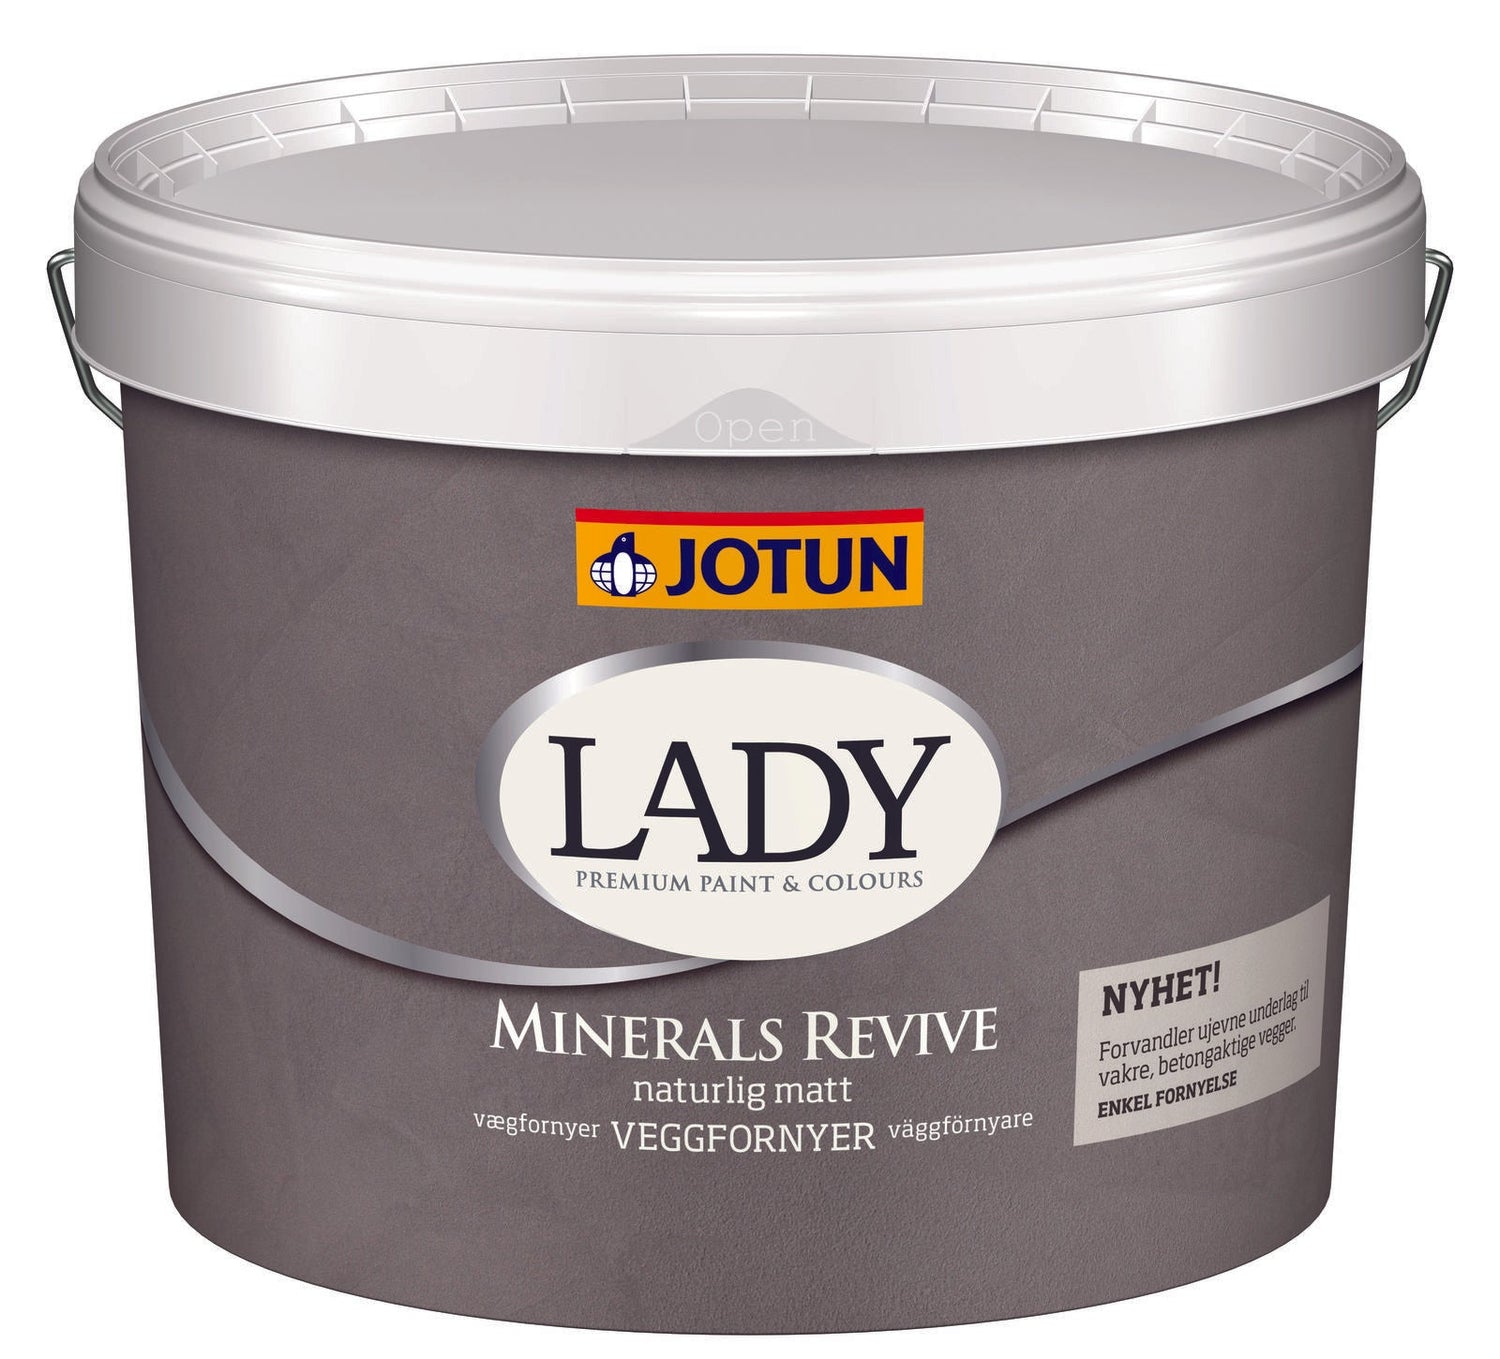 5503 NATURAL BLUE - Jotun Lady Minerals Revive - Malprivat.dk